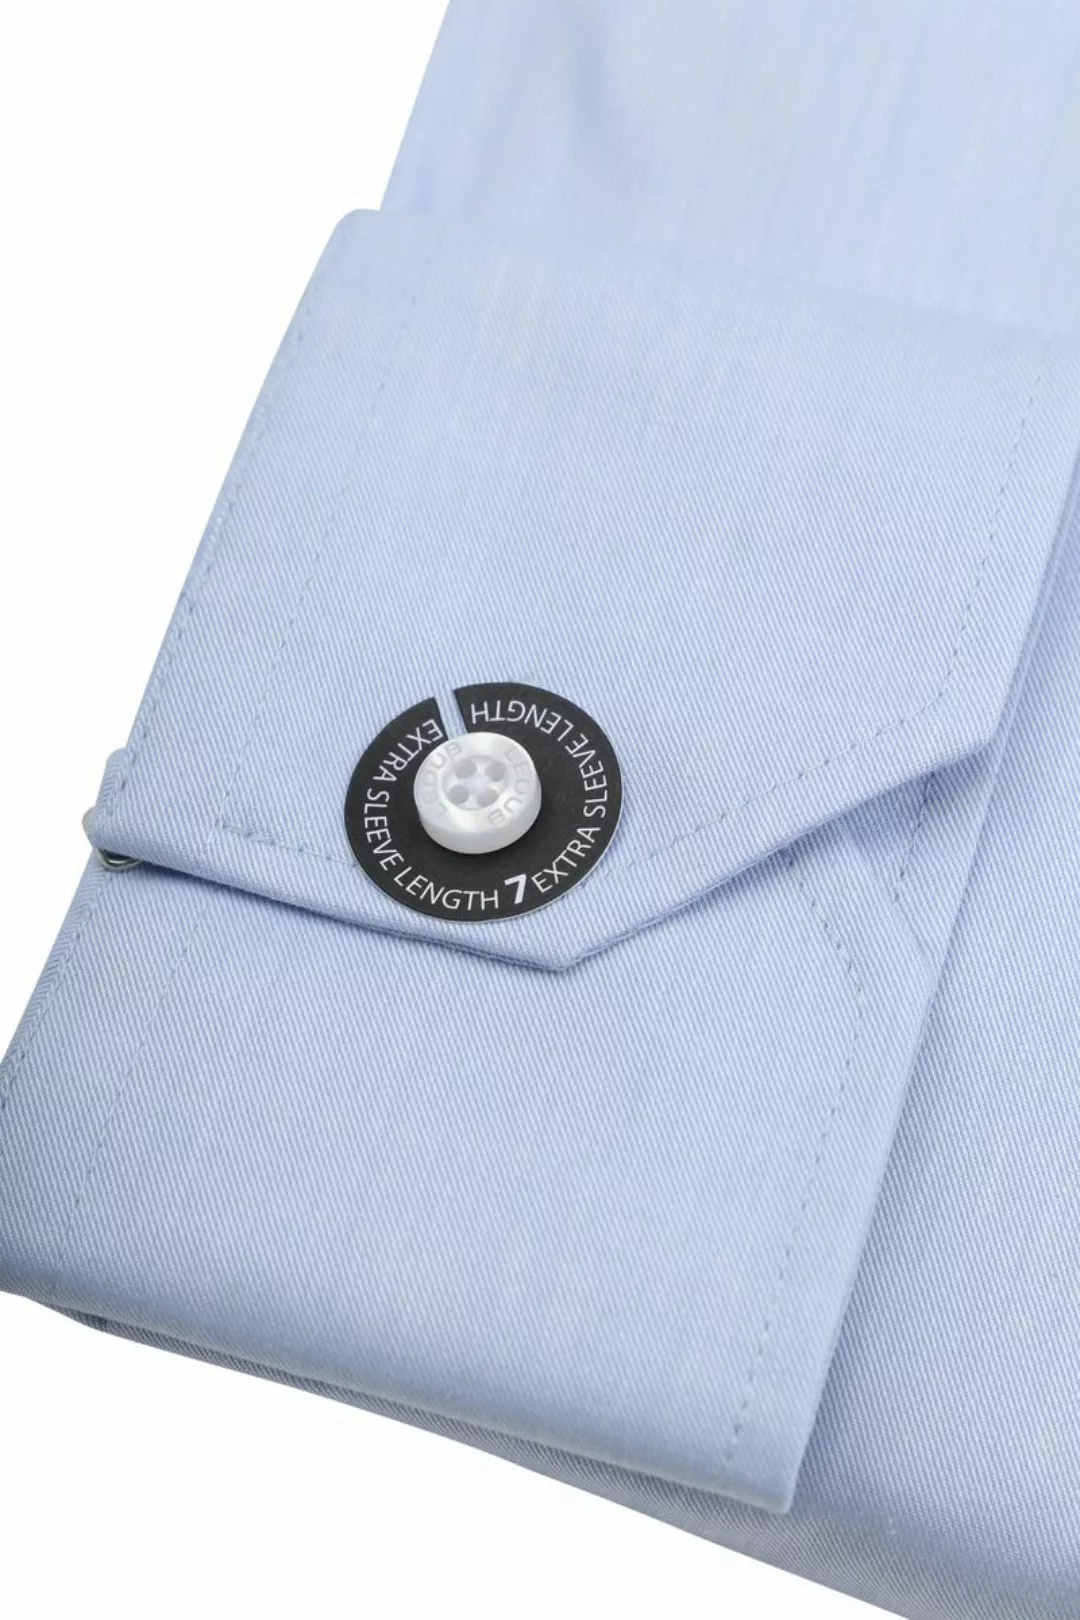 Ledub Hemd Hellblau Brusttassche Extra Long Sleeves - Größe 40 günstig online kaufen